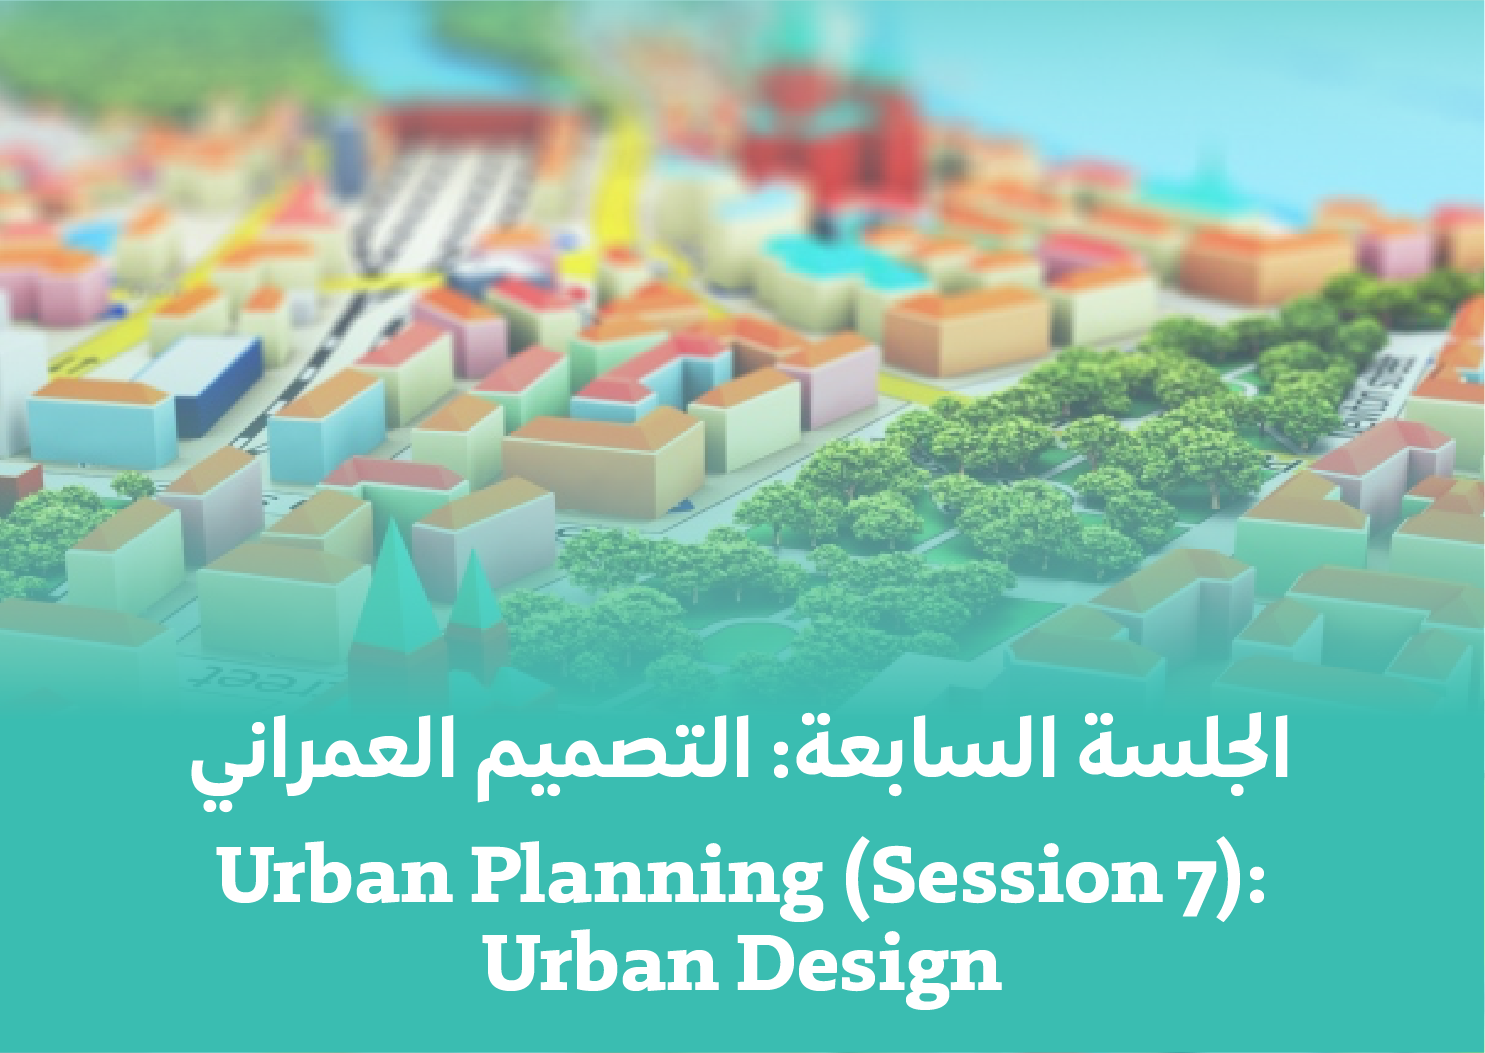 Session 7: Urban Design